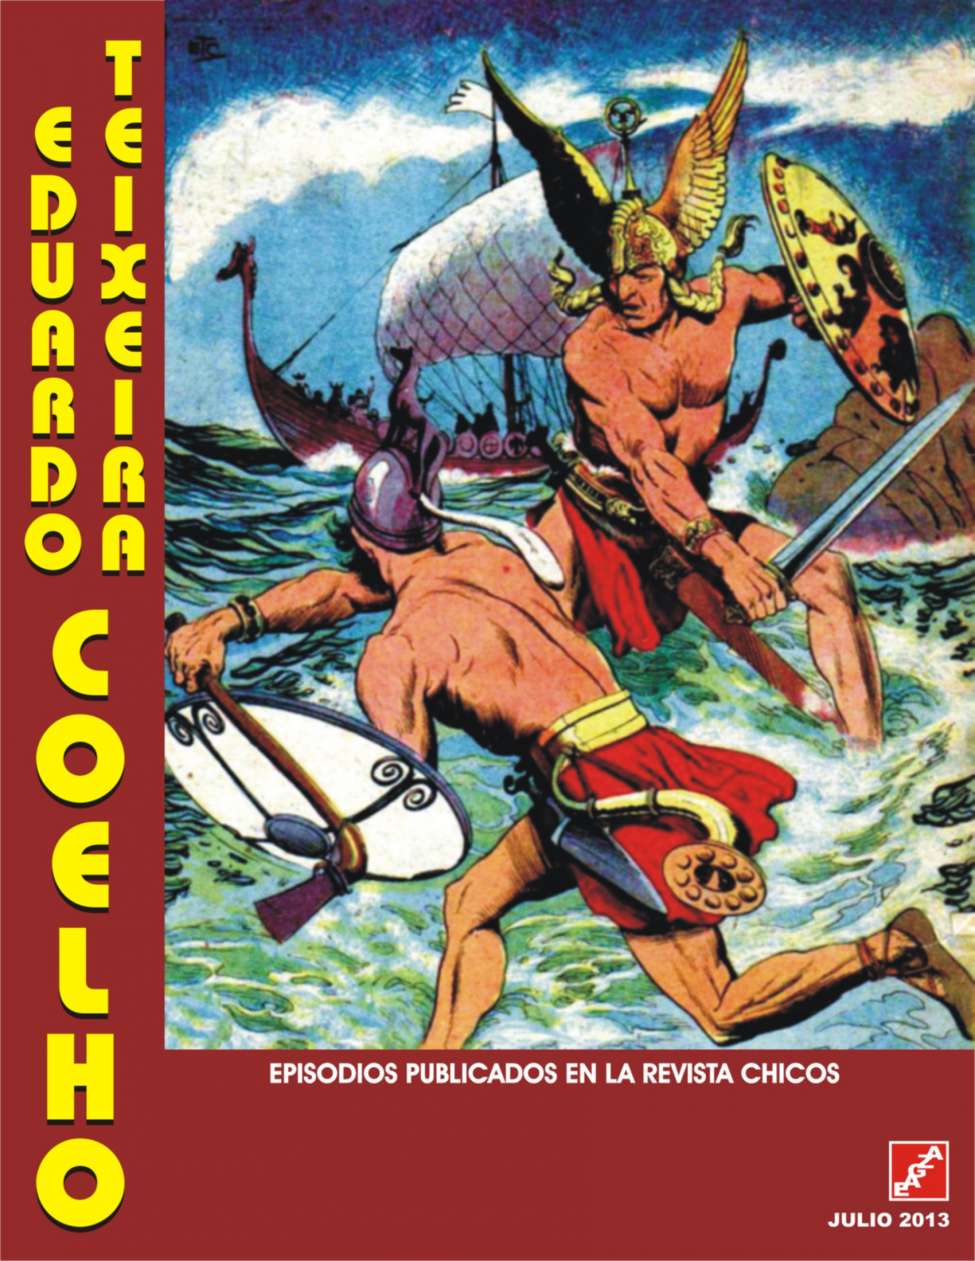 Book Cover For Chicos - Eduardo Teixeira Coelho en revista Chicos